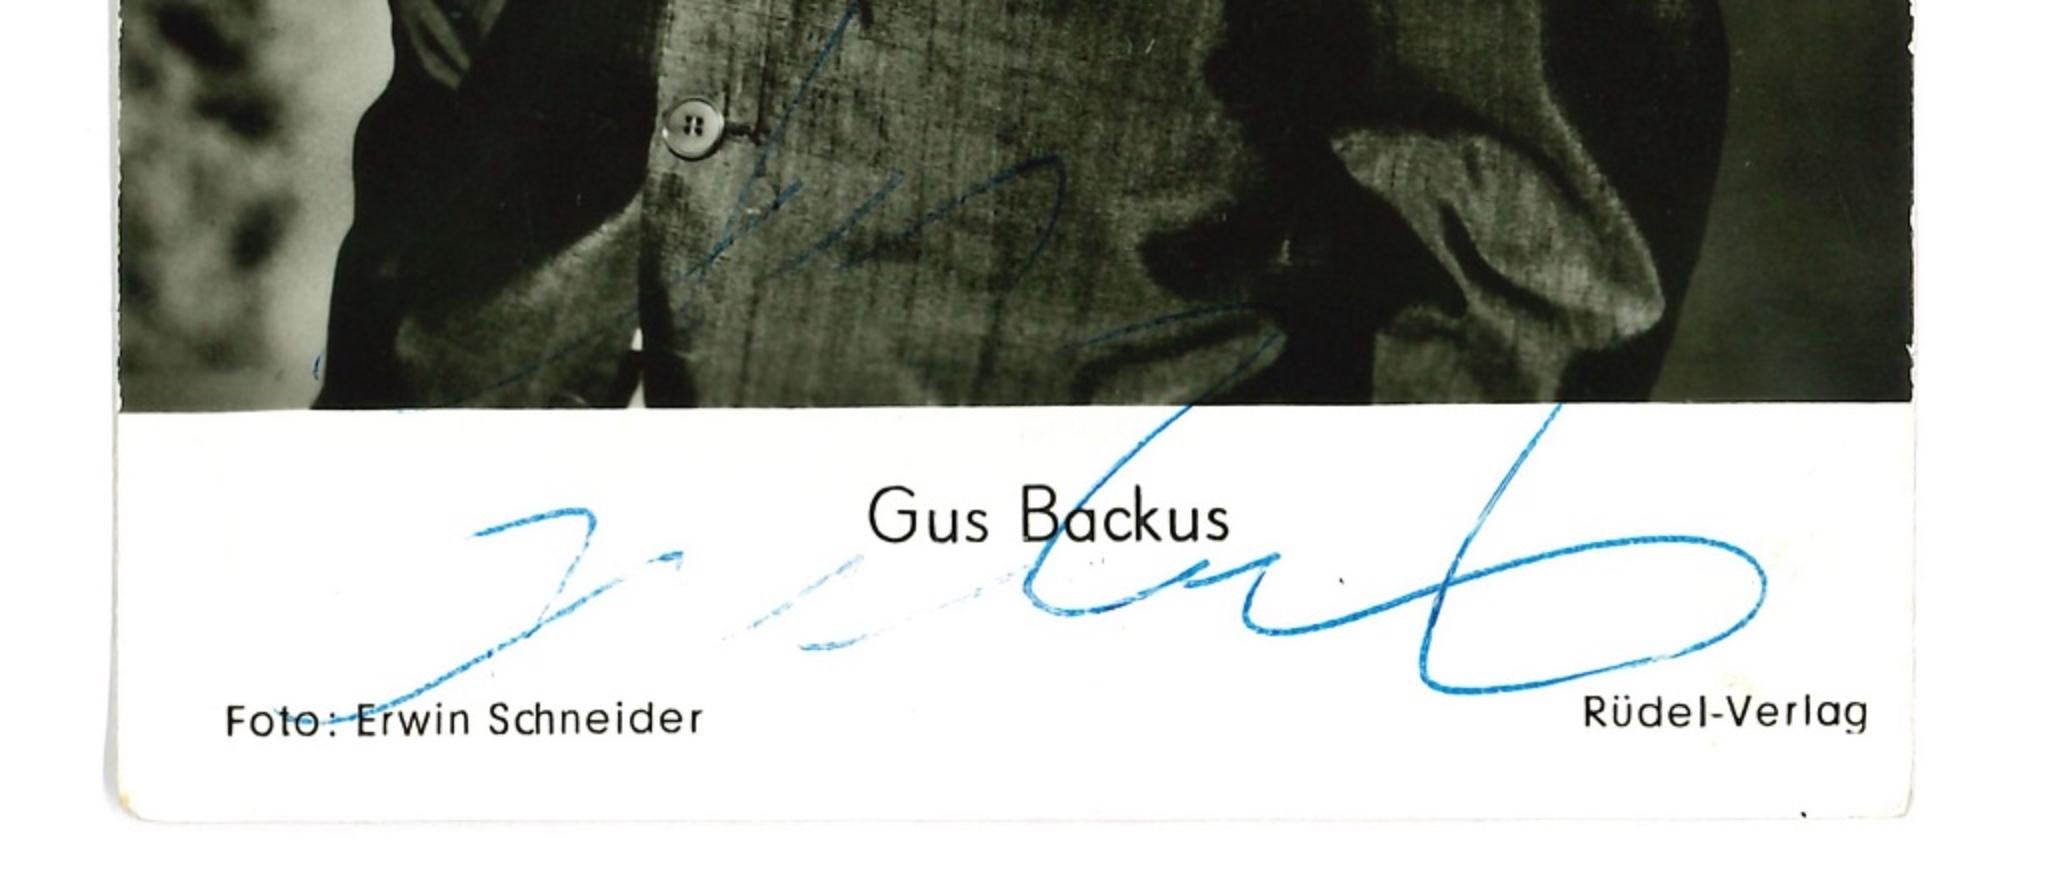 Autograph Portrait of Gus Backus - Vintage b/w Postcard - 1960s - Photograph by Unknown